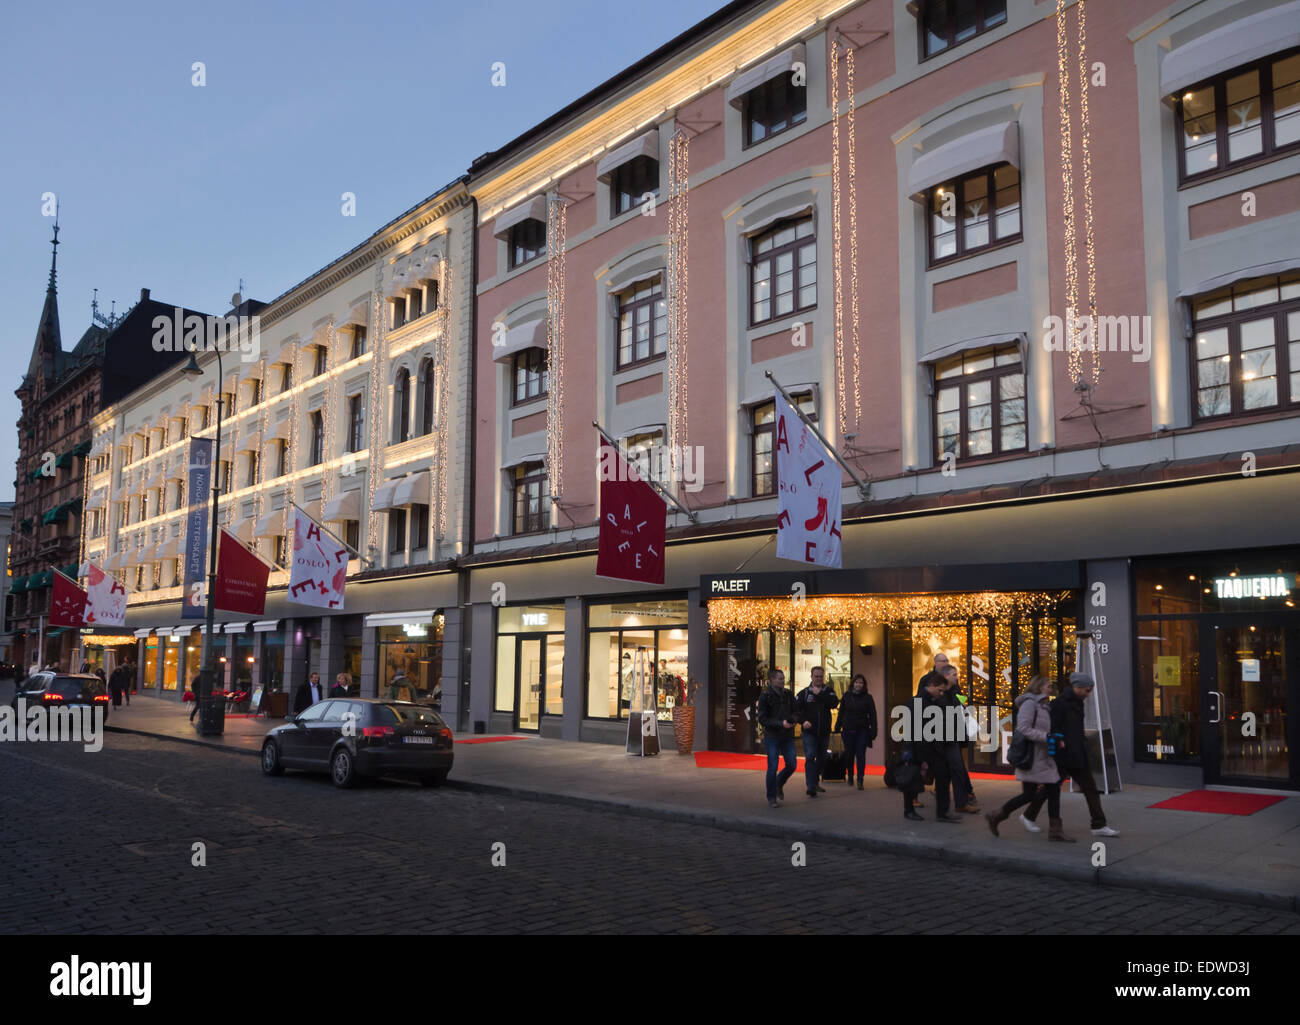 Paleet shopping centre in Karl Johans gate Oslo Norvegia, illuminazione per i clienti nella stagione invernale Foto Stock